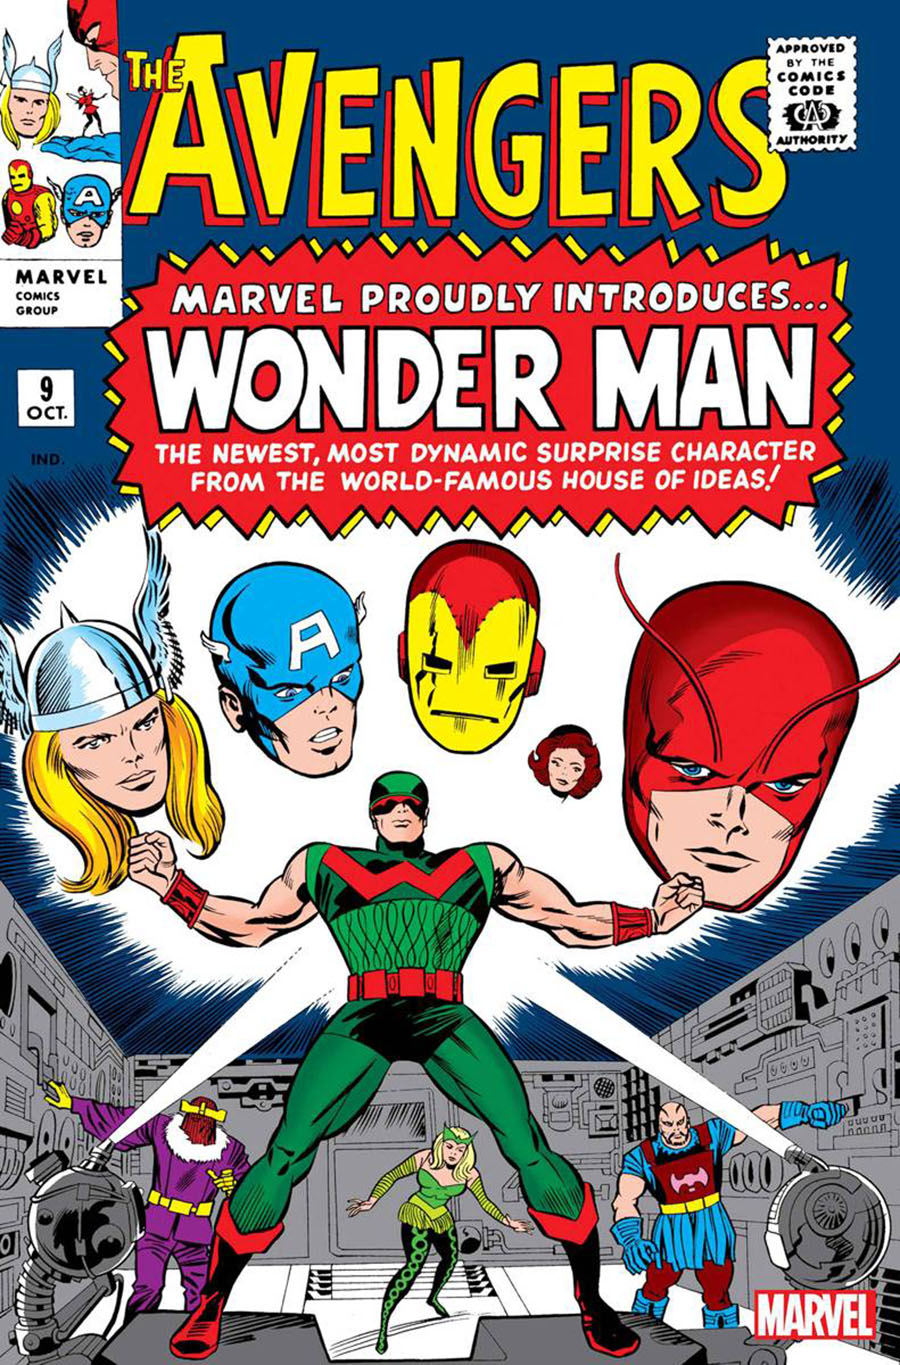 Avengers #9 Cover B Facsimile Edition